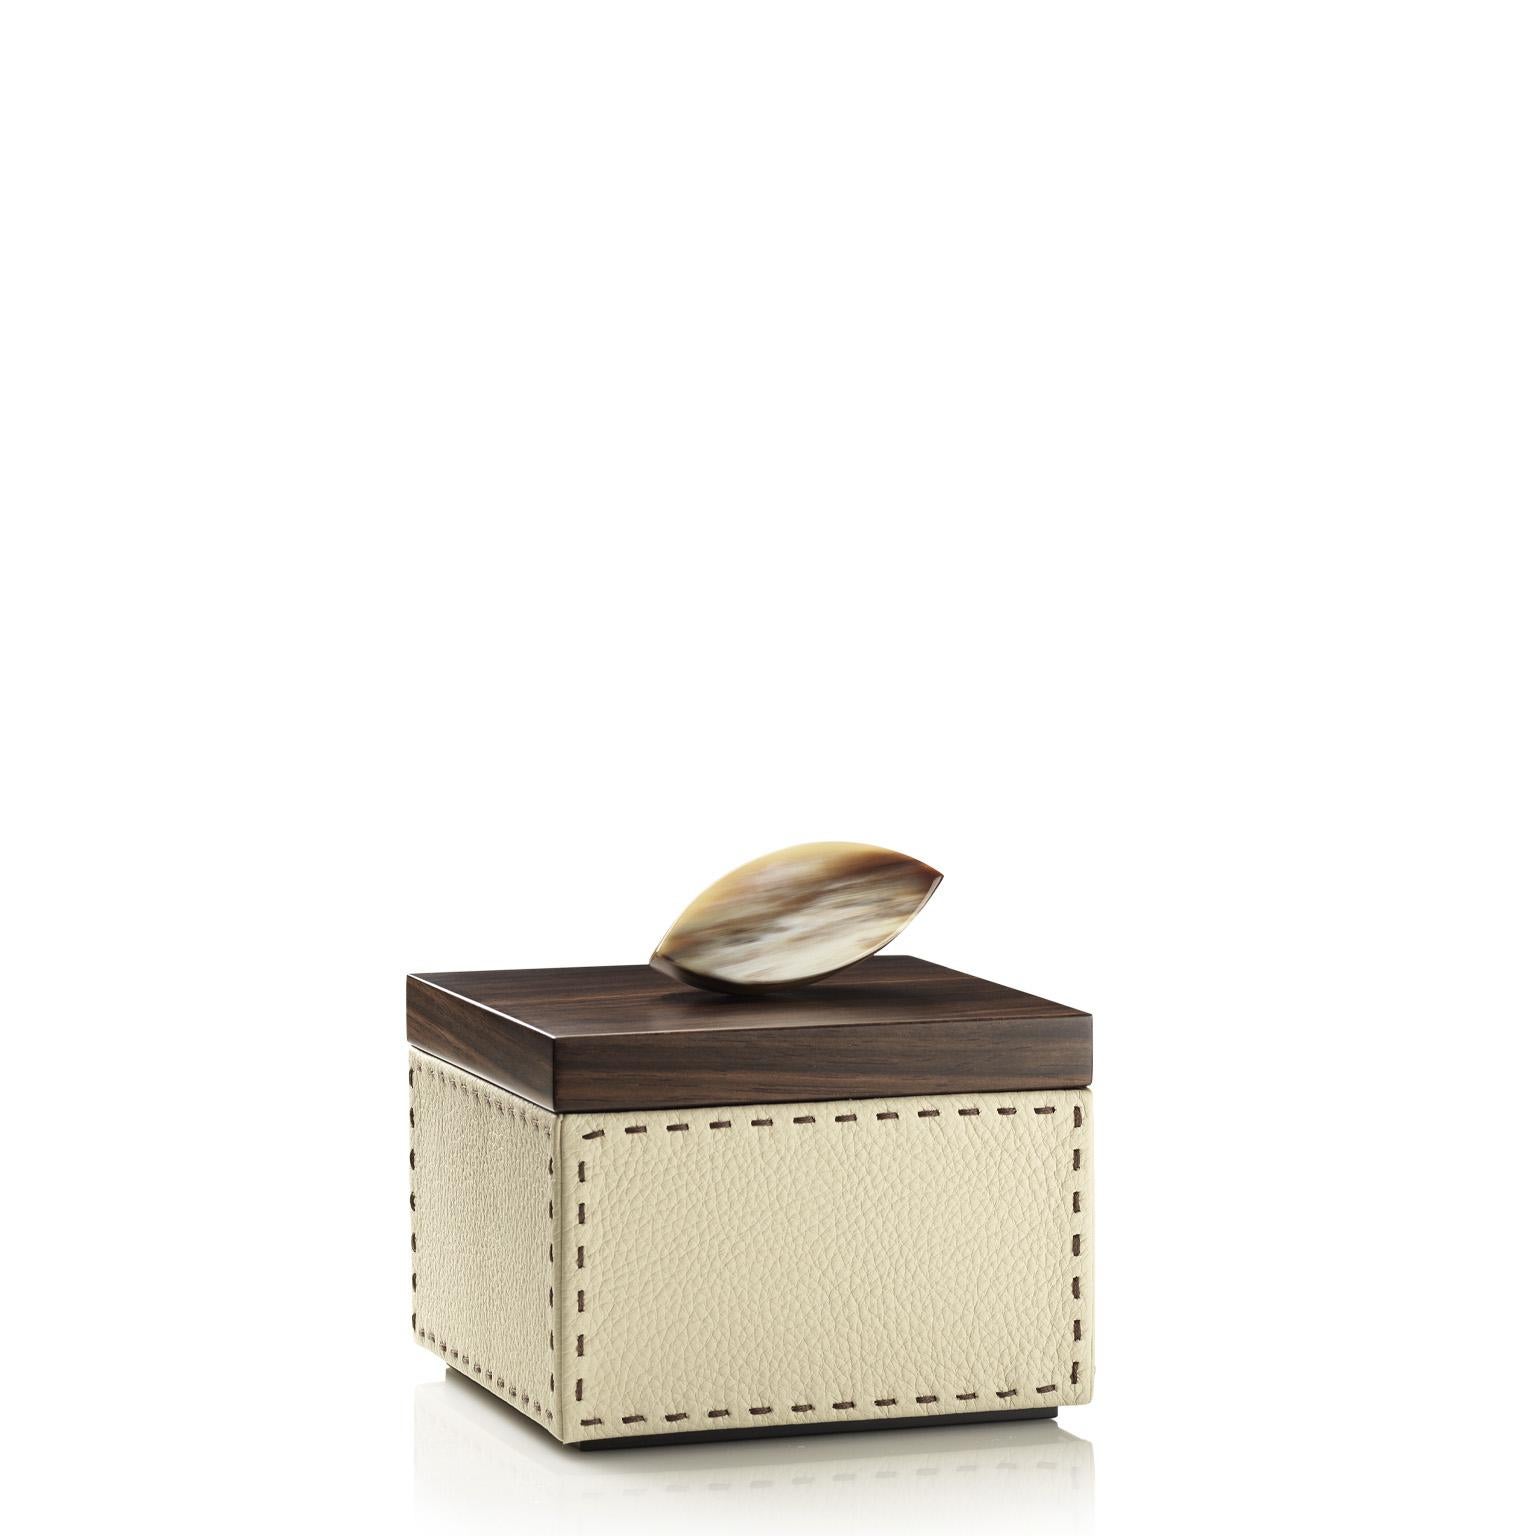 Capricia Square Box in Pebbled Leather with Handle in Corno Italiano, Mod. 4475 For Sale 1